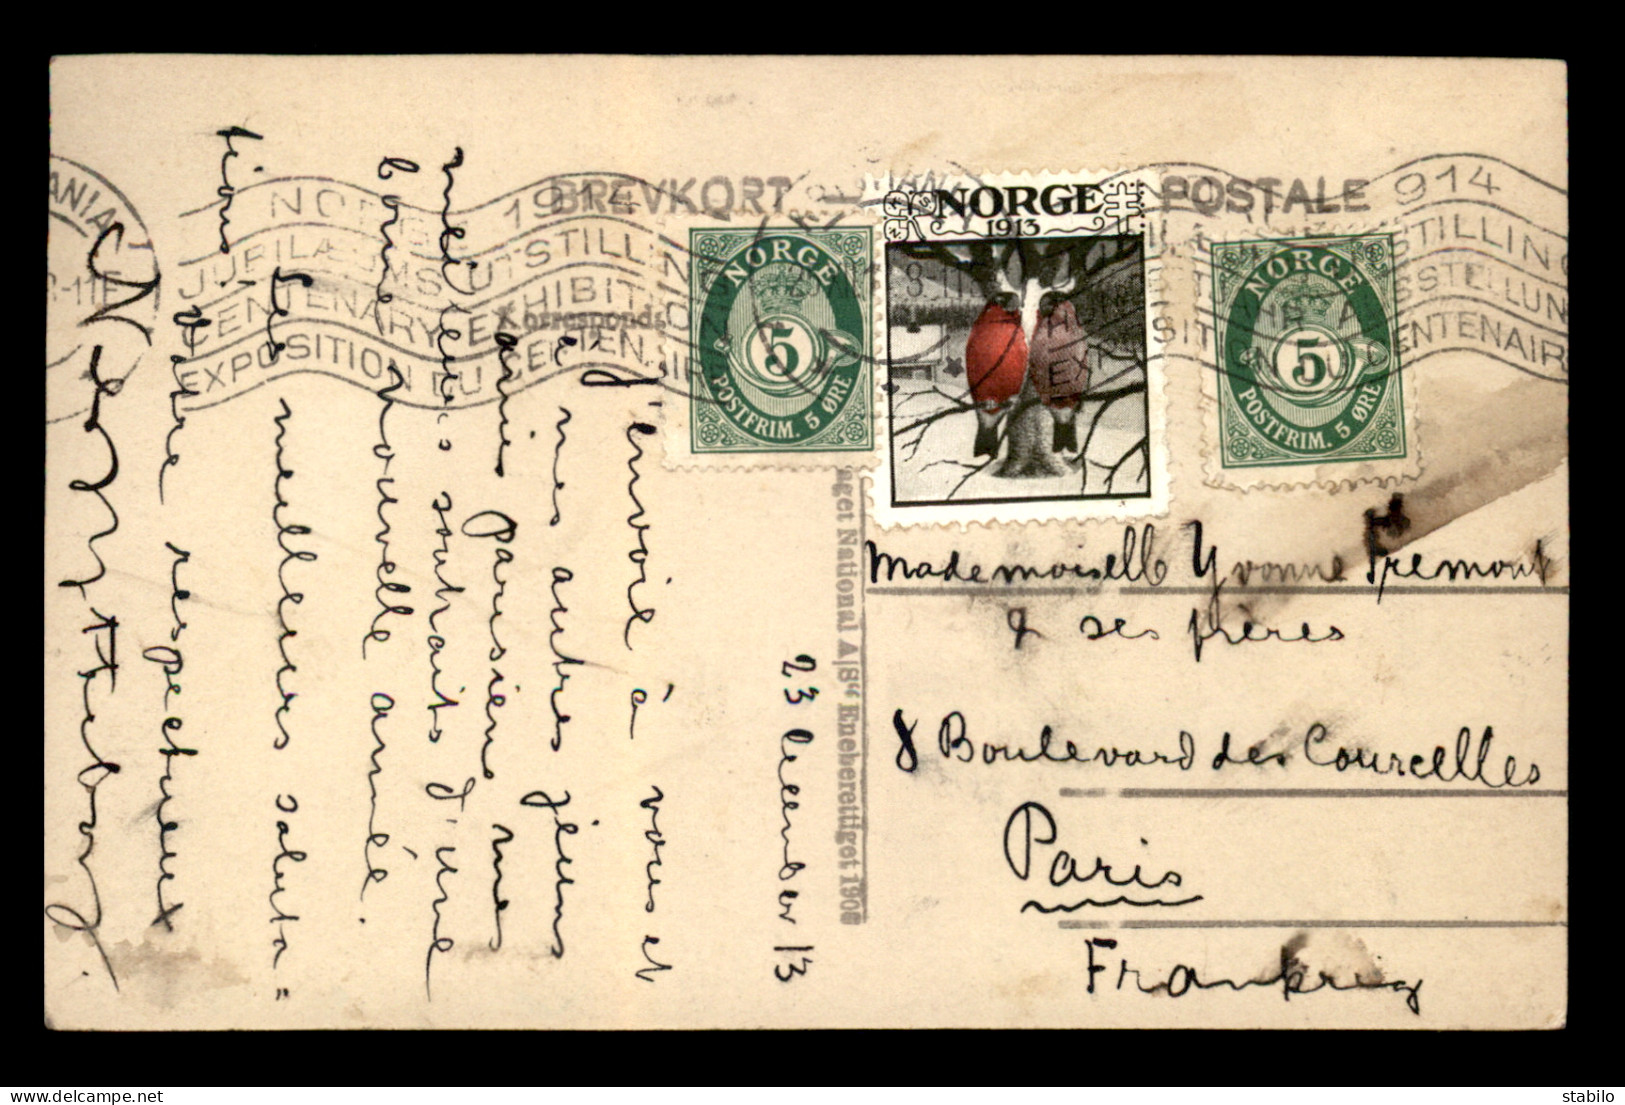 NORVEGE - OBLITERATION EXPOSITION DU CENTENAIRE 1914 DU 23.12.1913 AVEC VIGNETTE NORGE 1913 SUR CARTE STEREO - Lettres & Documents